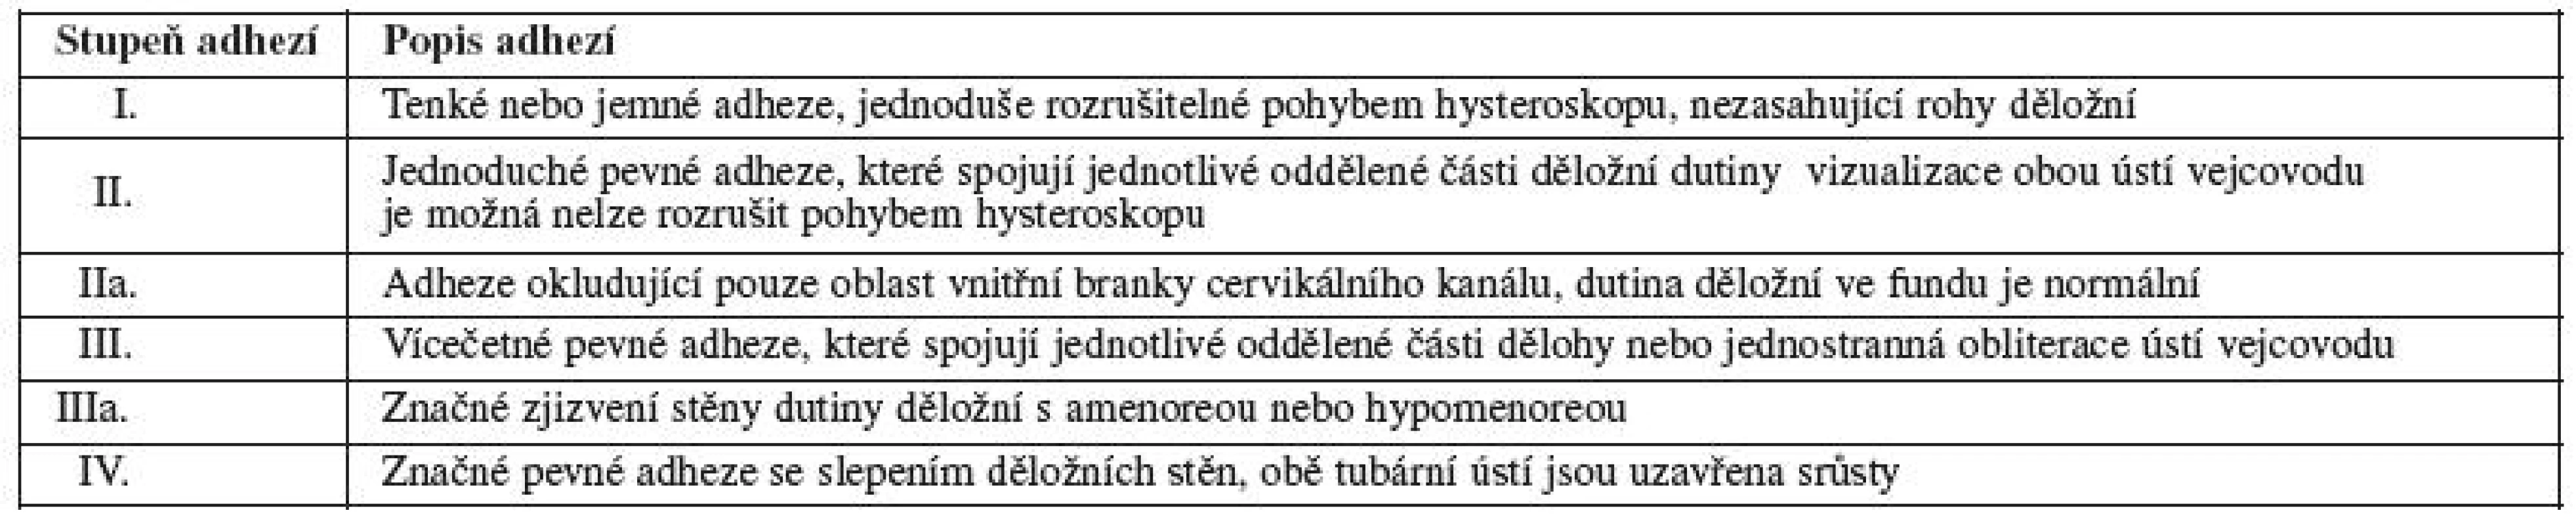 Klasifikace adhezí podle European Society for Hysteroscopy (ESH) 1989